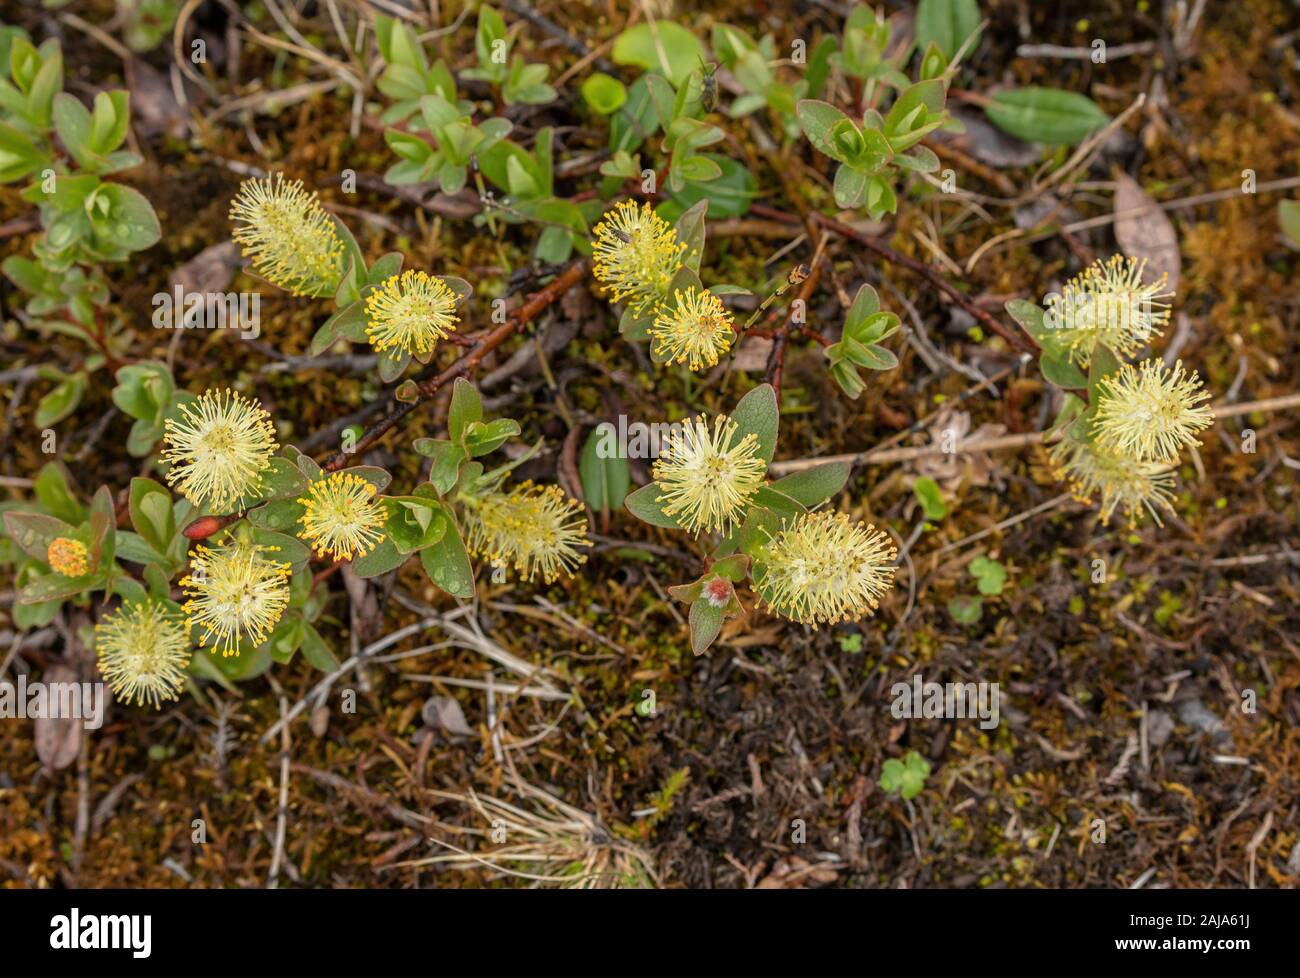 Salix arbuscula immagini e fotografie stock ad alta risoluzione - Alamy